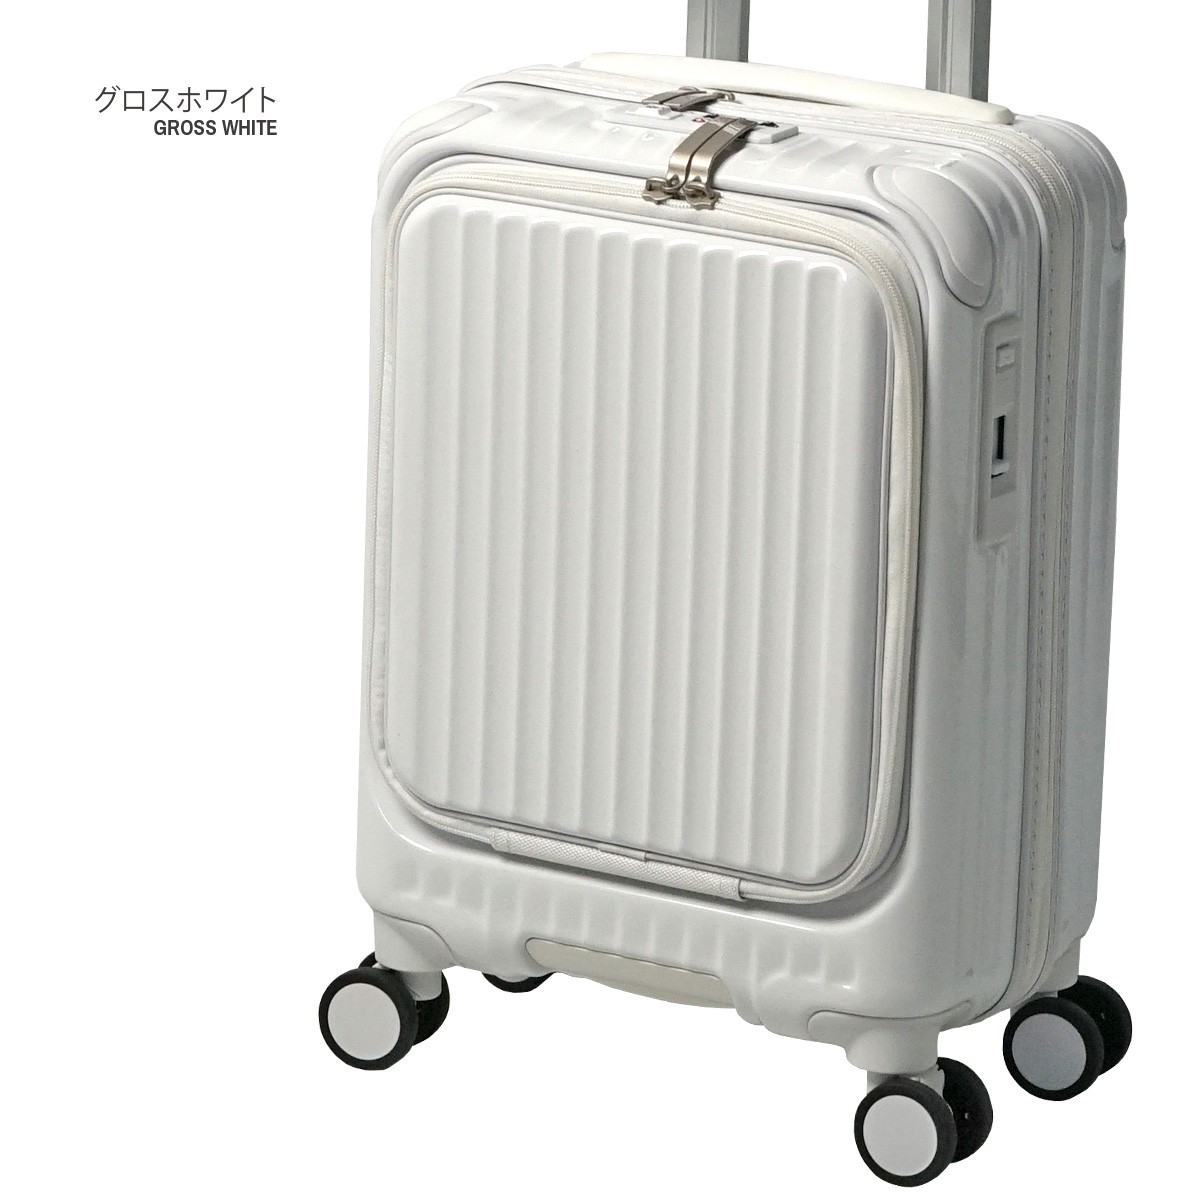 スーツケース コインロッカーサイズ 機内持ち込みサイズ フロント 